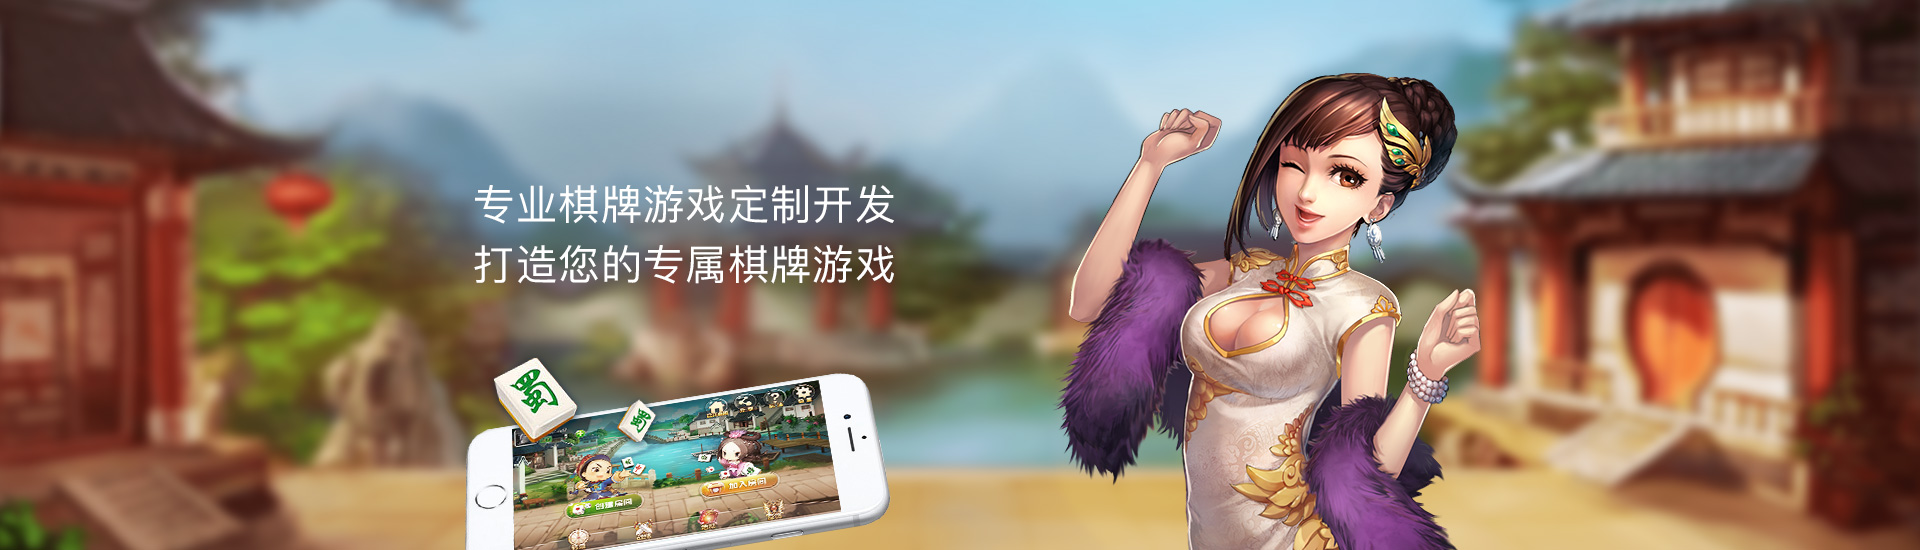 英亚体育·(中国)App下载 - 手机版App下载